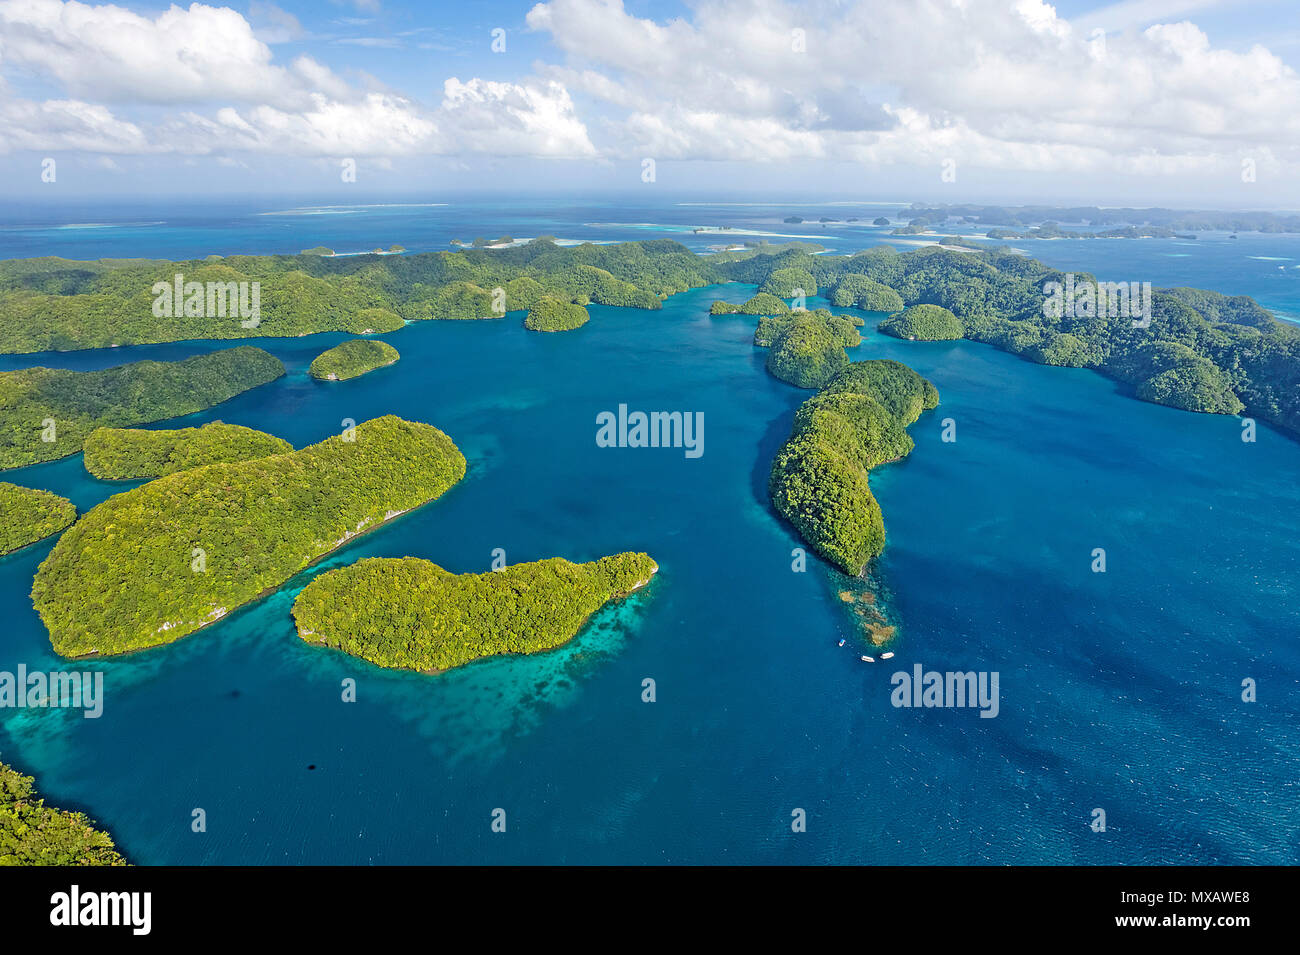 Luftaufnahme von Palau, Mikronesien, Asien | Aerial view of Palau, Micronesia, Asia Stock Photo